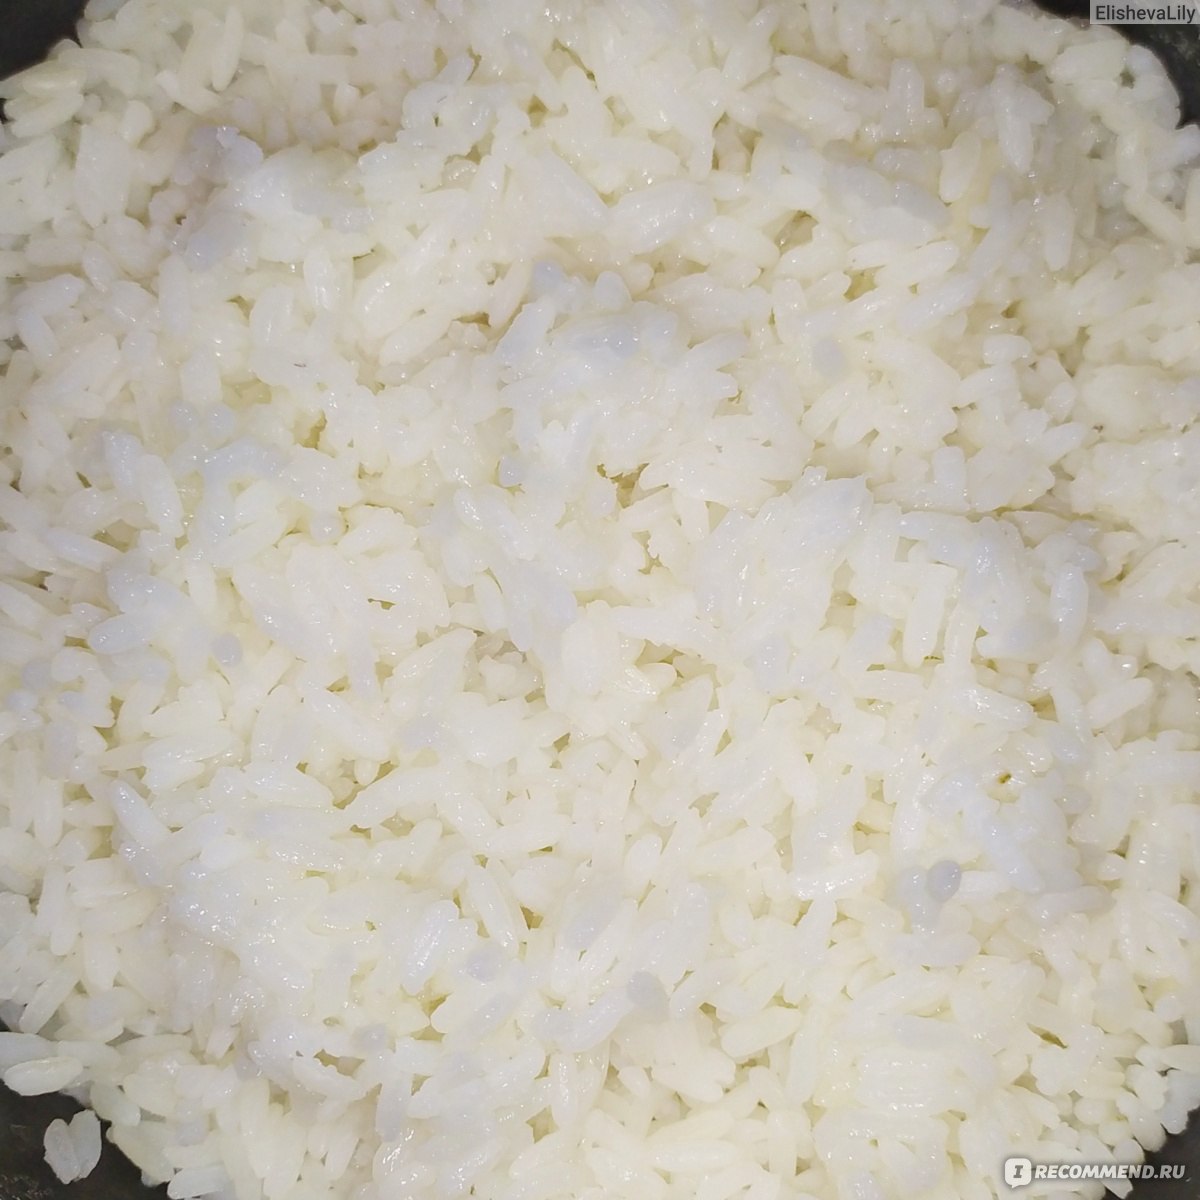 Если есть рис каждый день